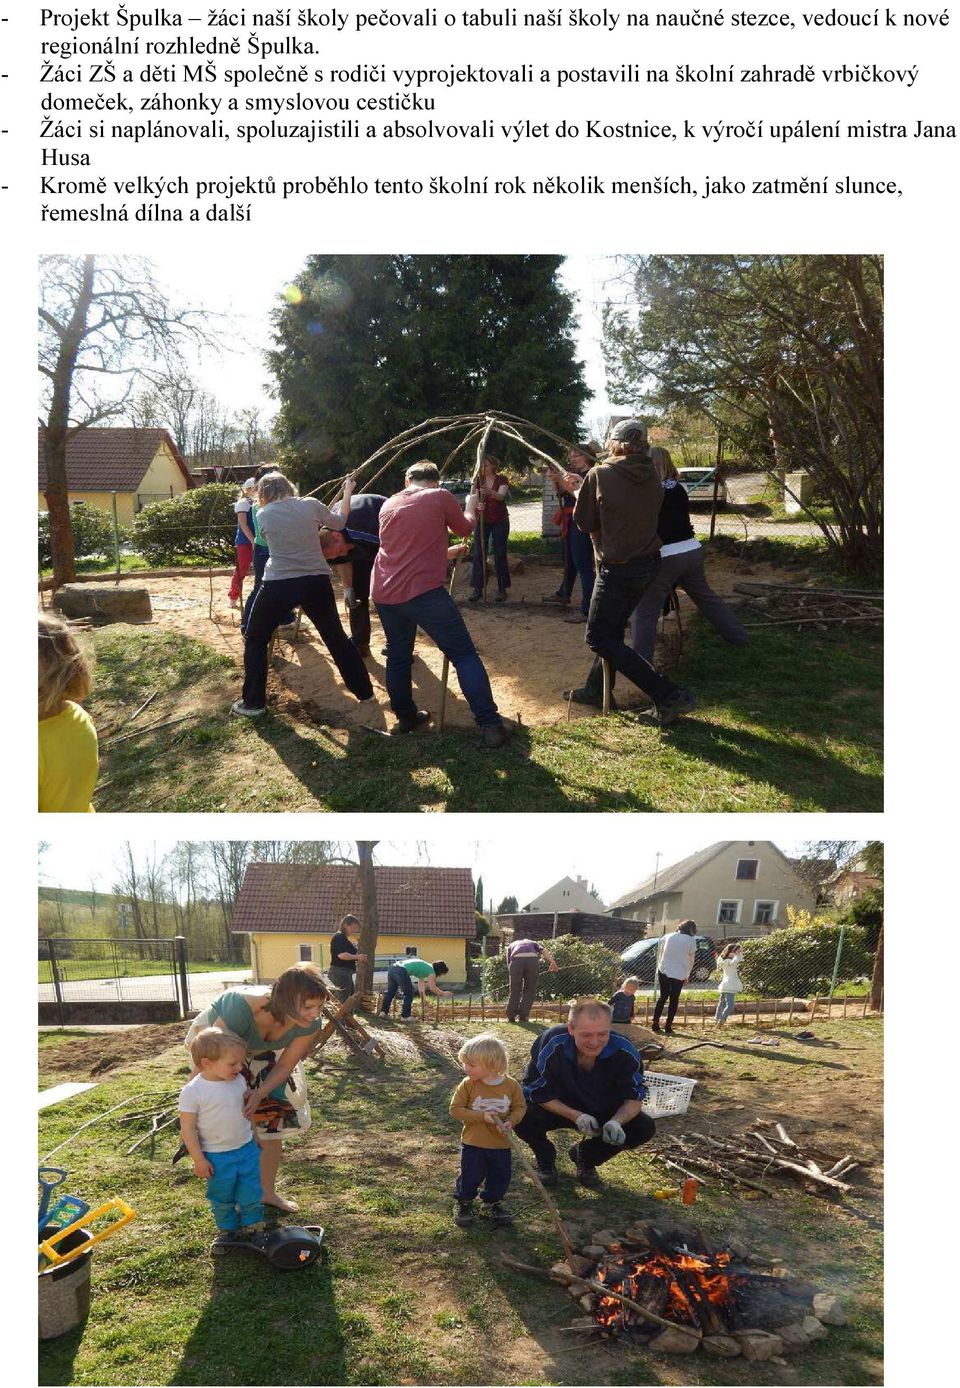 - Žáci ZŠ a děti MŠ společně s rodiči vyprojektovali a postavili na školní zahradě vrbičkový domeček, záhonky a